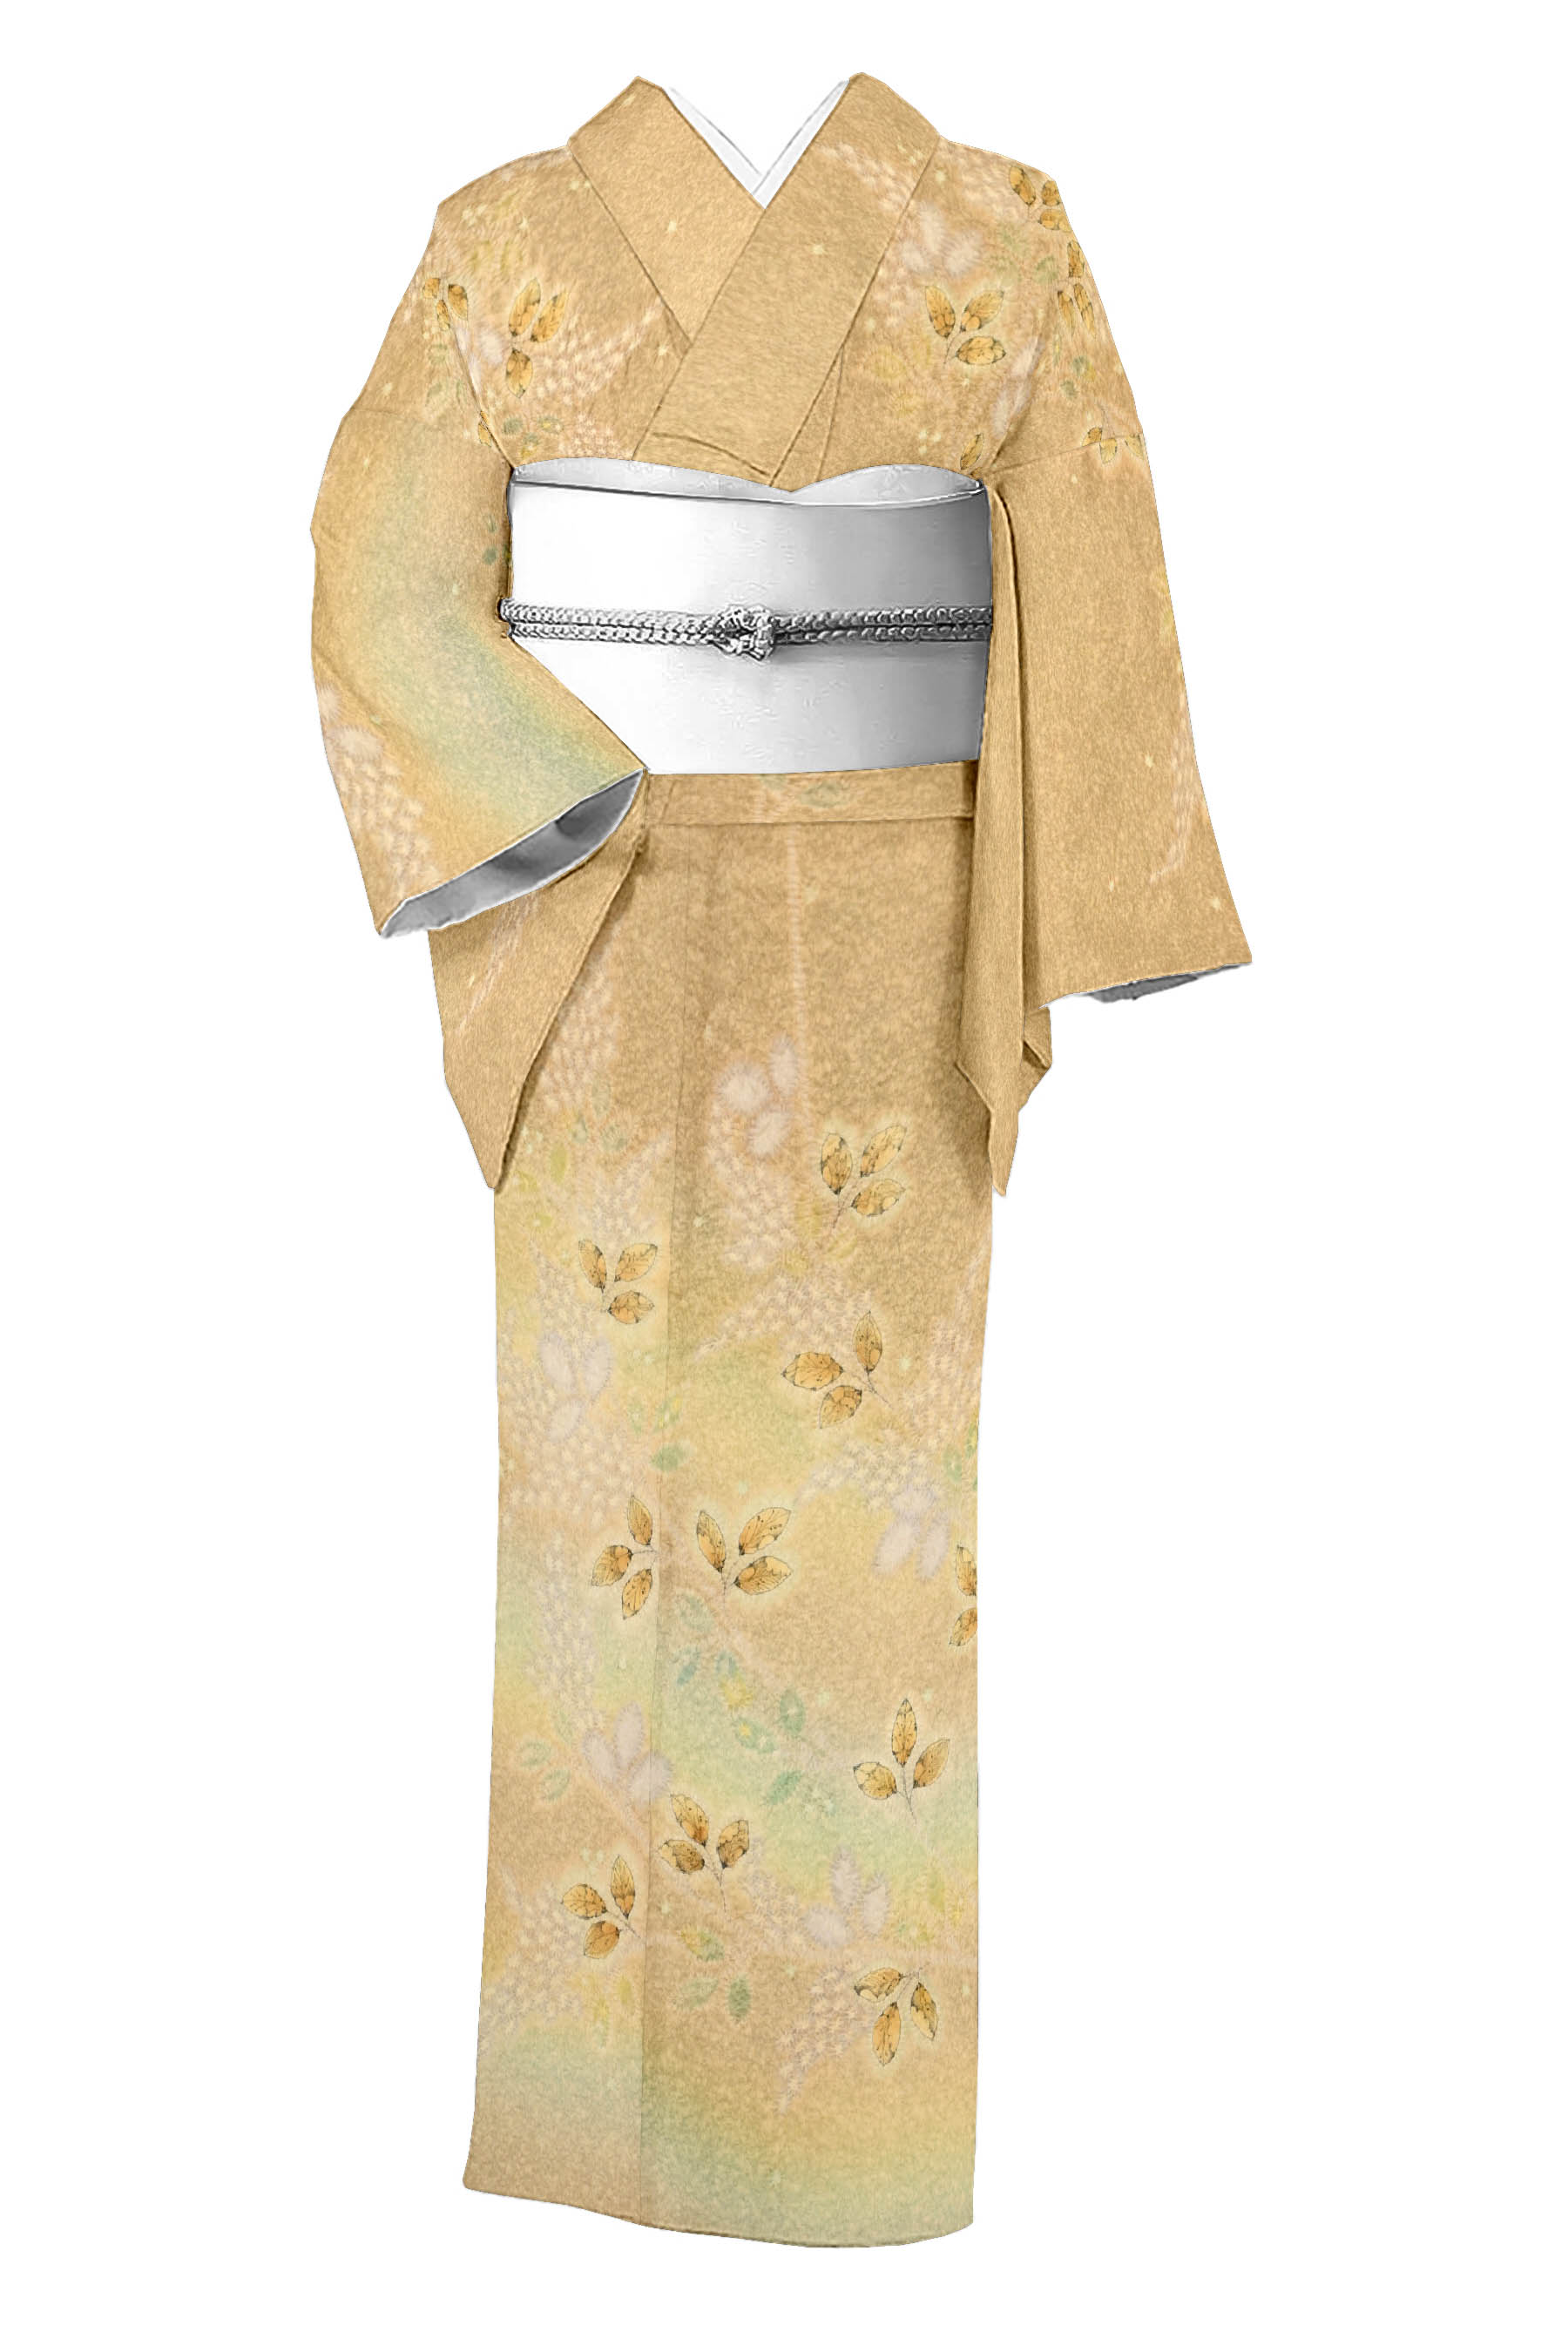 初代 久保田一竹の着物・帯の一覧|京都きもの市場【日本最大級の着物通販サイト】